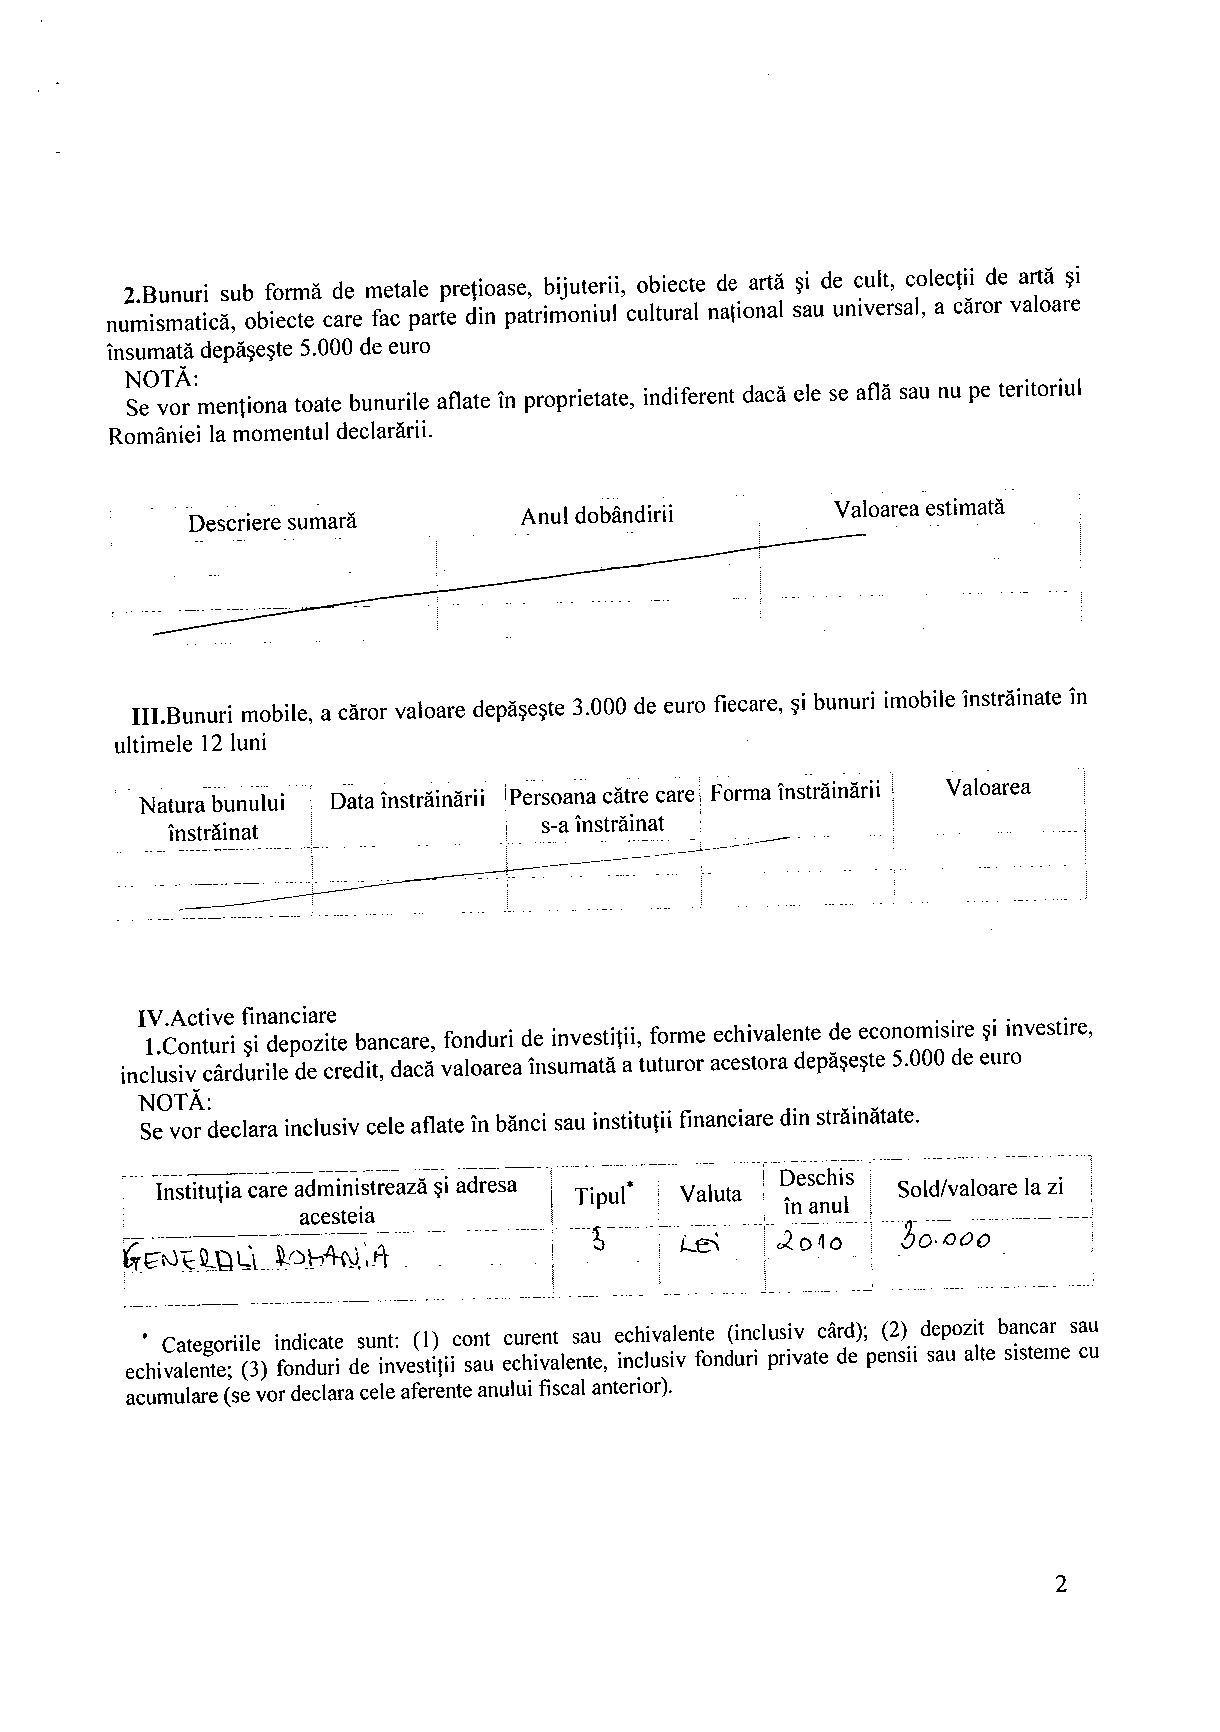 Declaratia de avere si de interese din data 25.06.2012 - pagina 2 din 6